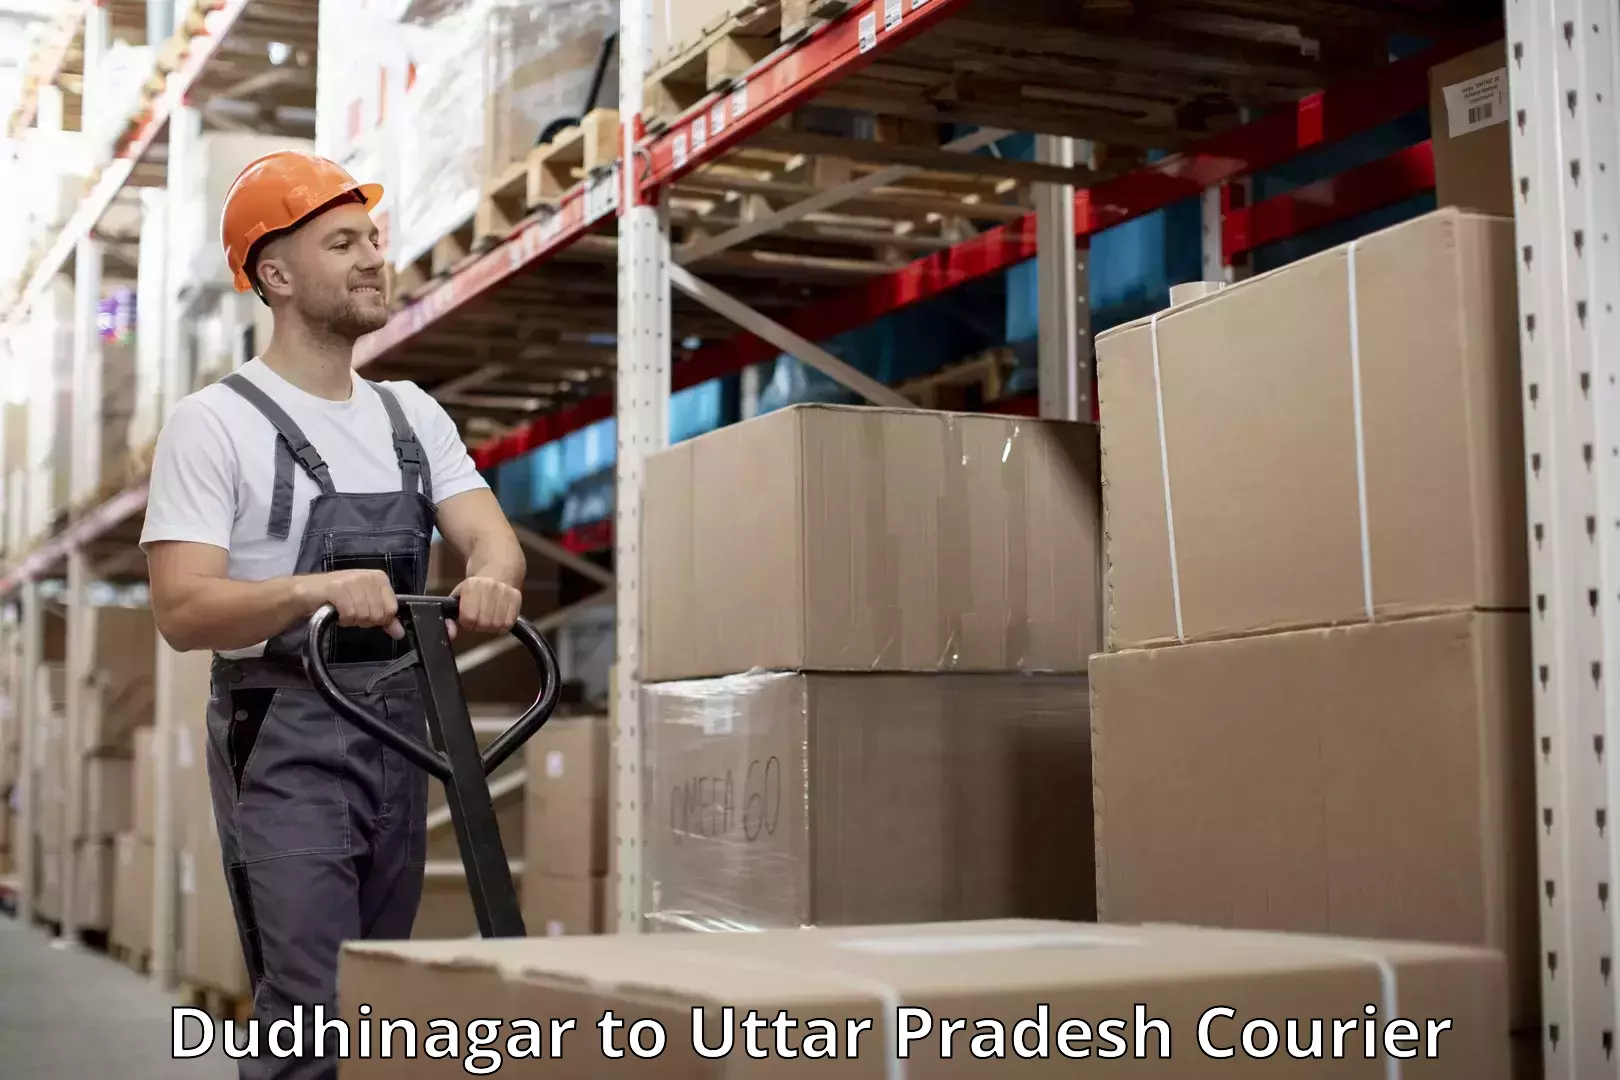 Baggage shipping quotes Dudhinagar to Uttar Pradesh